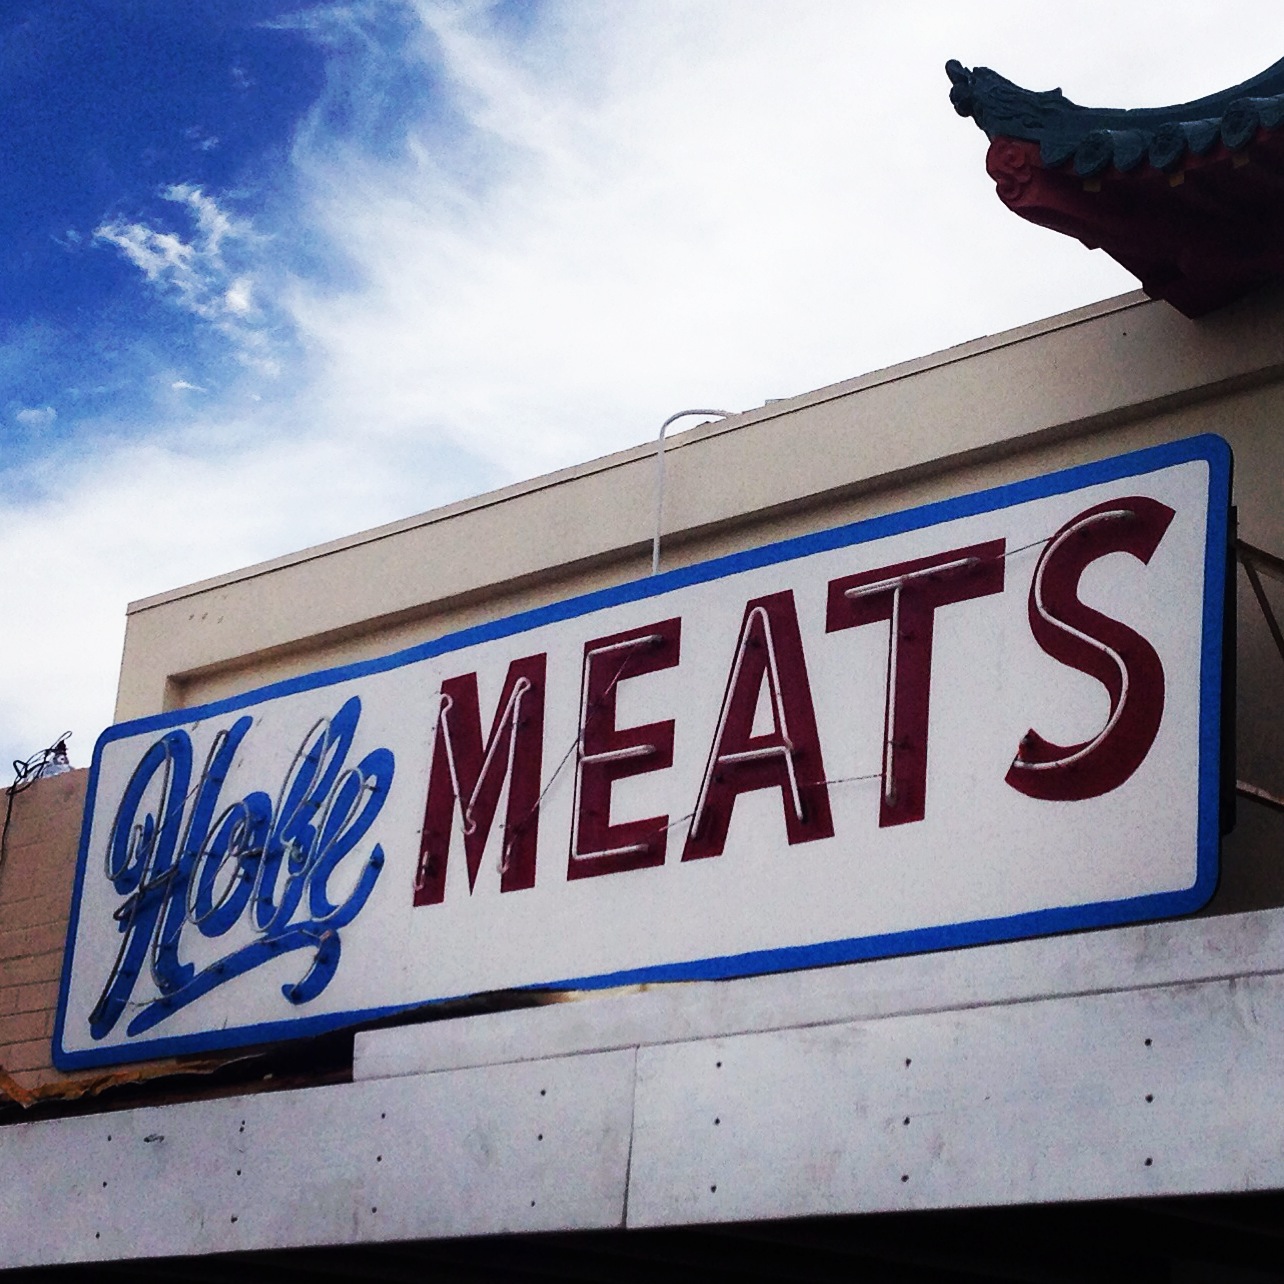 Hobe Meats neon sign in Phoenix Arizona